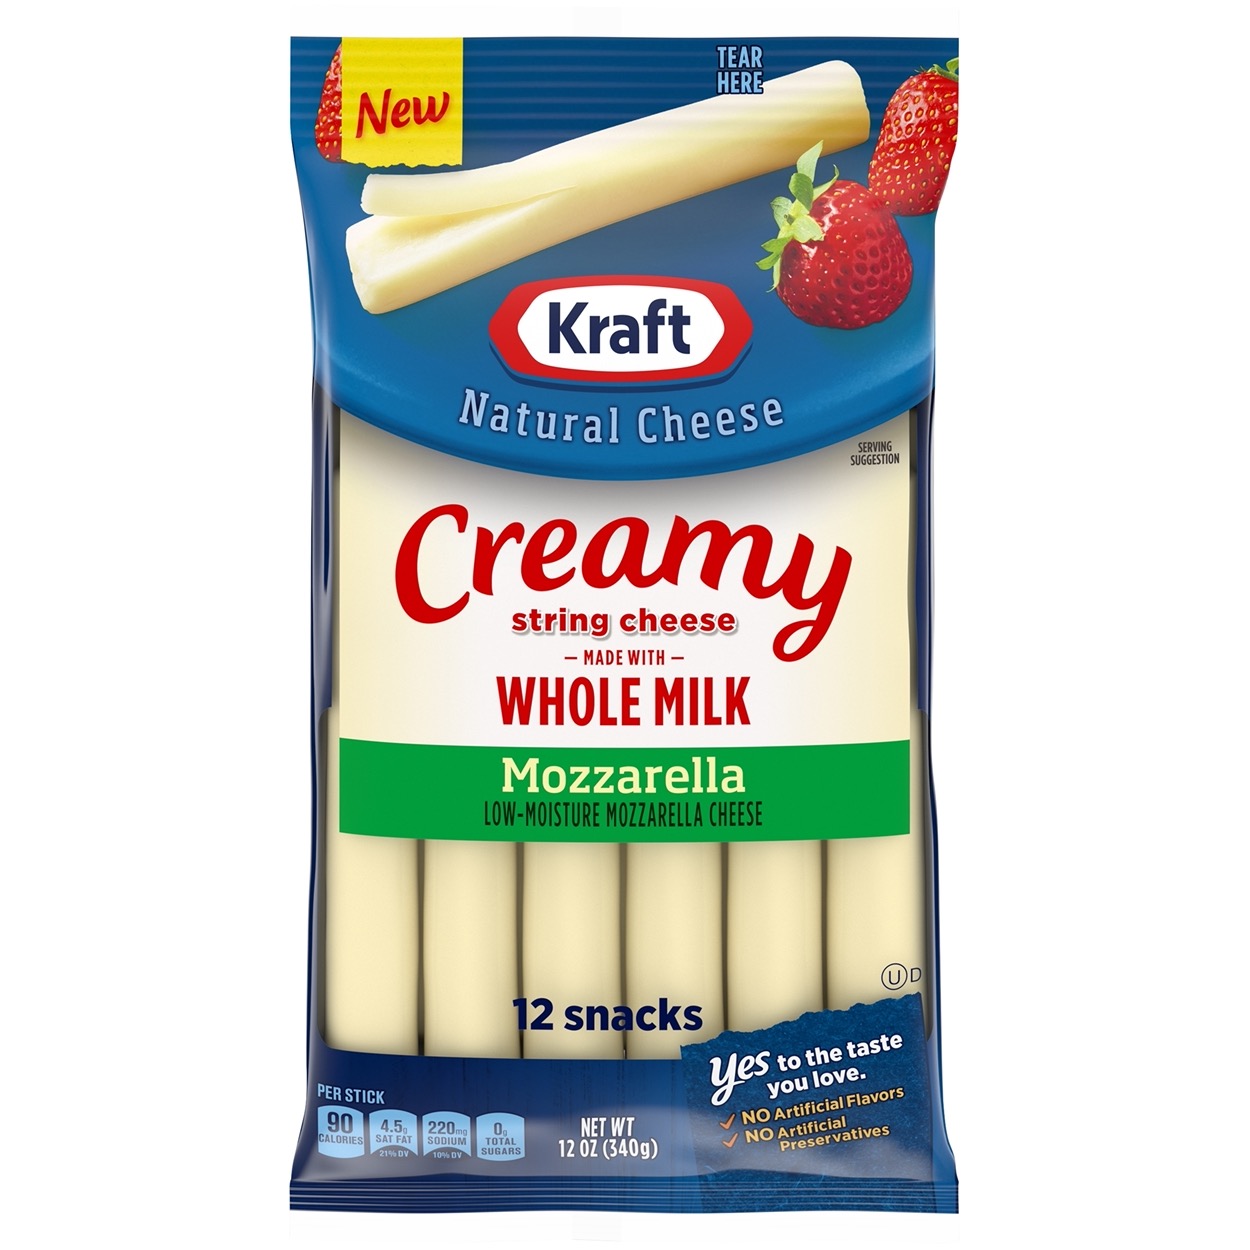 Creamy Whole Milk Mozzarella